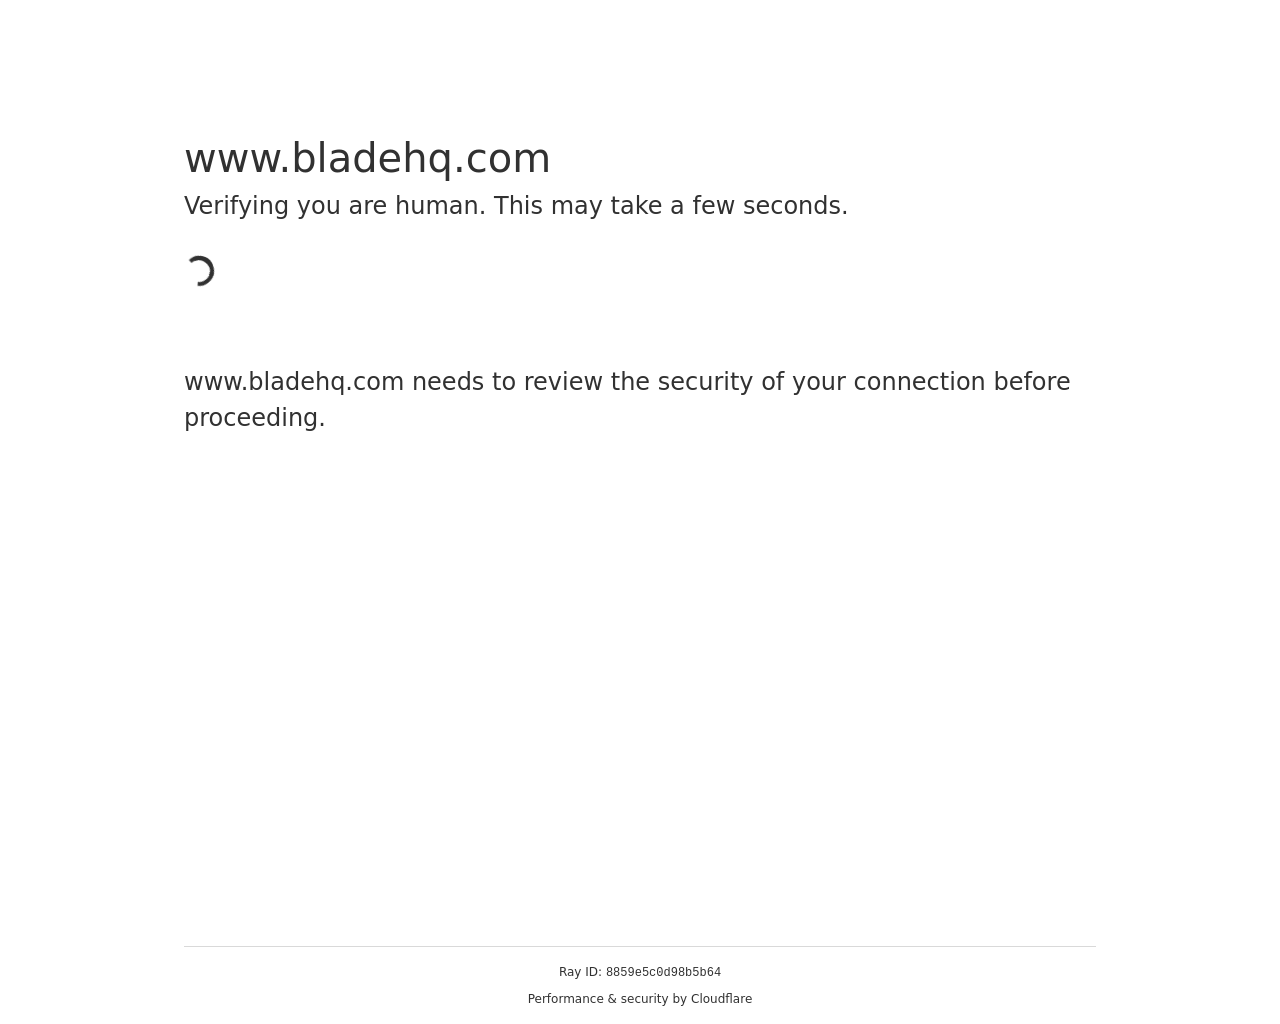 bladehq.com